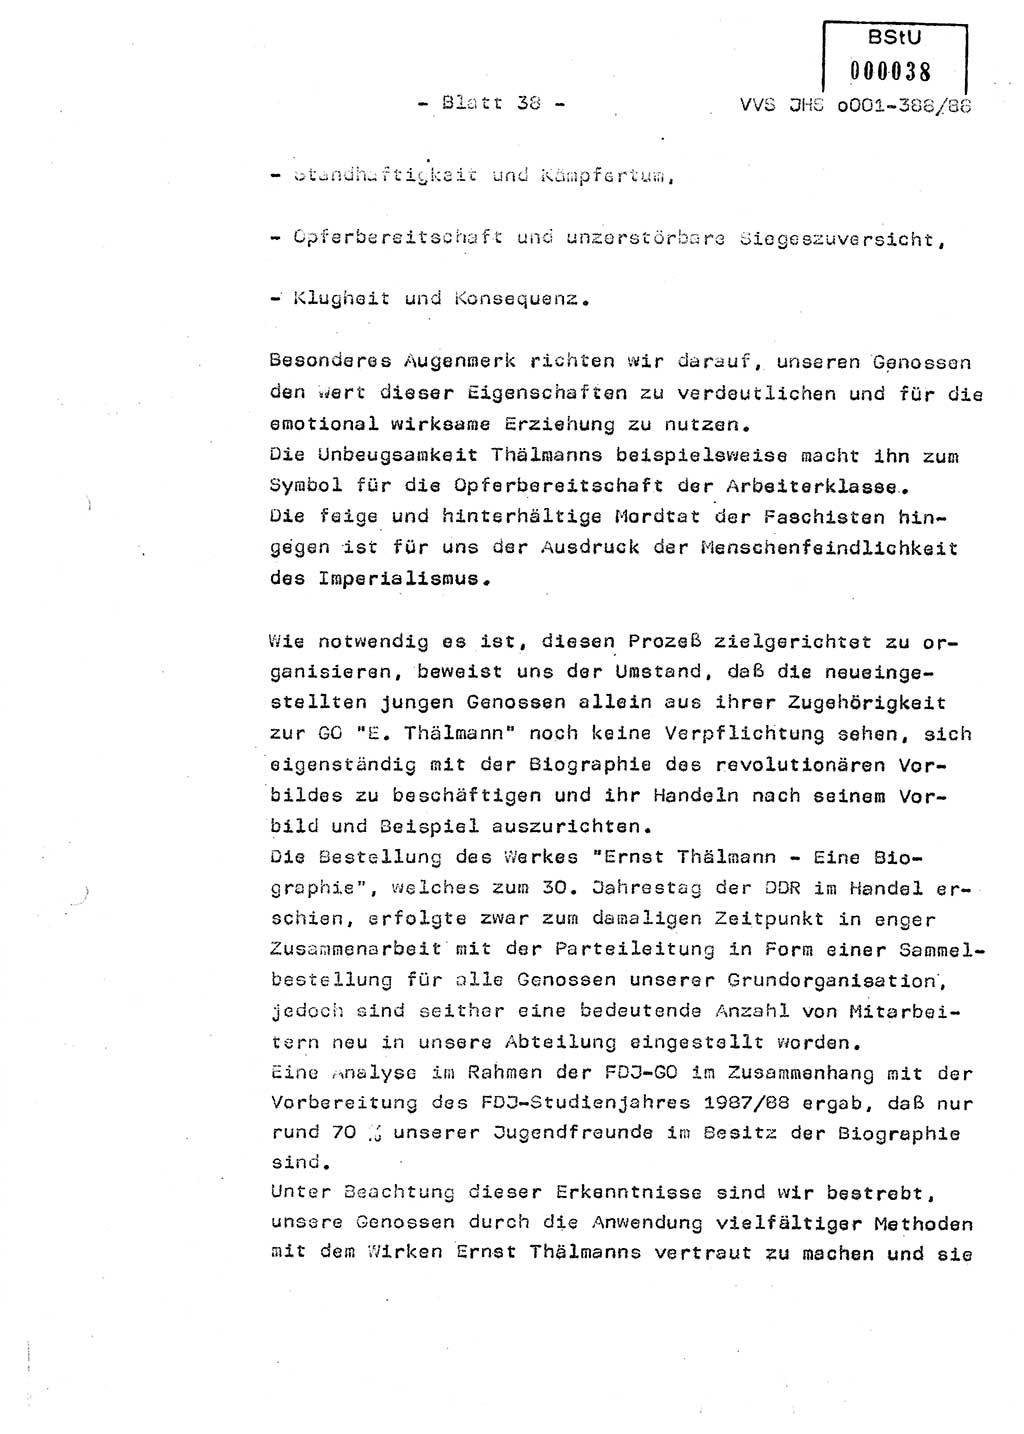 Diplomarbeit Hauptmann Heinz Brixel (Abt. ⅩⅣ), Ministerium für Staatssicherheit (MfS) [Deutsche Demokratische Republik (DDR)], Juristische Hochschule (JHS), Vertrauliche Verschlußsache (VVS) o001-388/88, Potsdam 1988, Blatt 38 (Dipl.-Arb. MfS DDR JHS VVS o001-388/88 1988, Bl. 38)